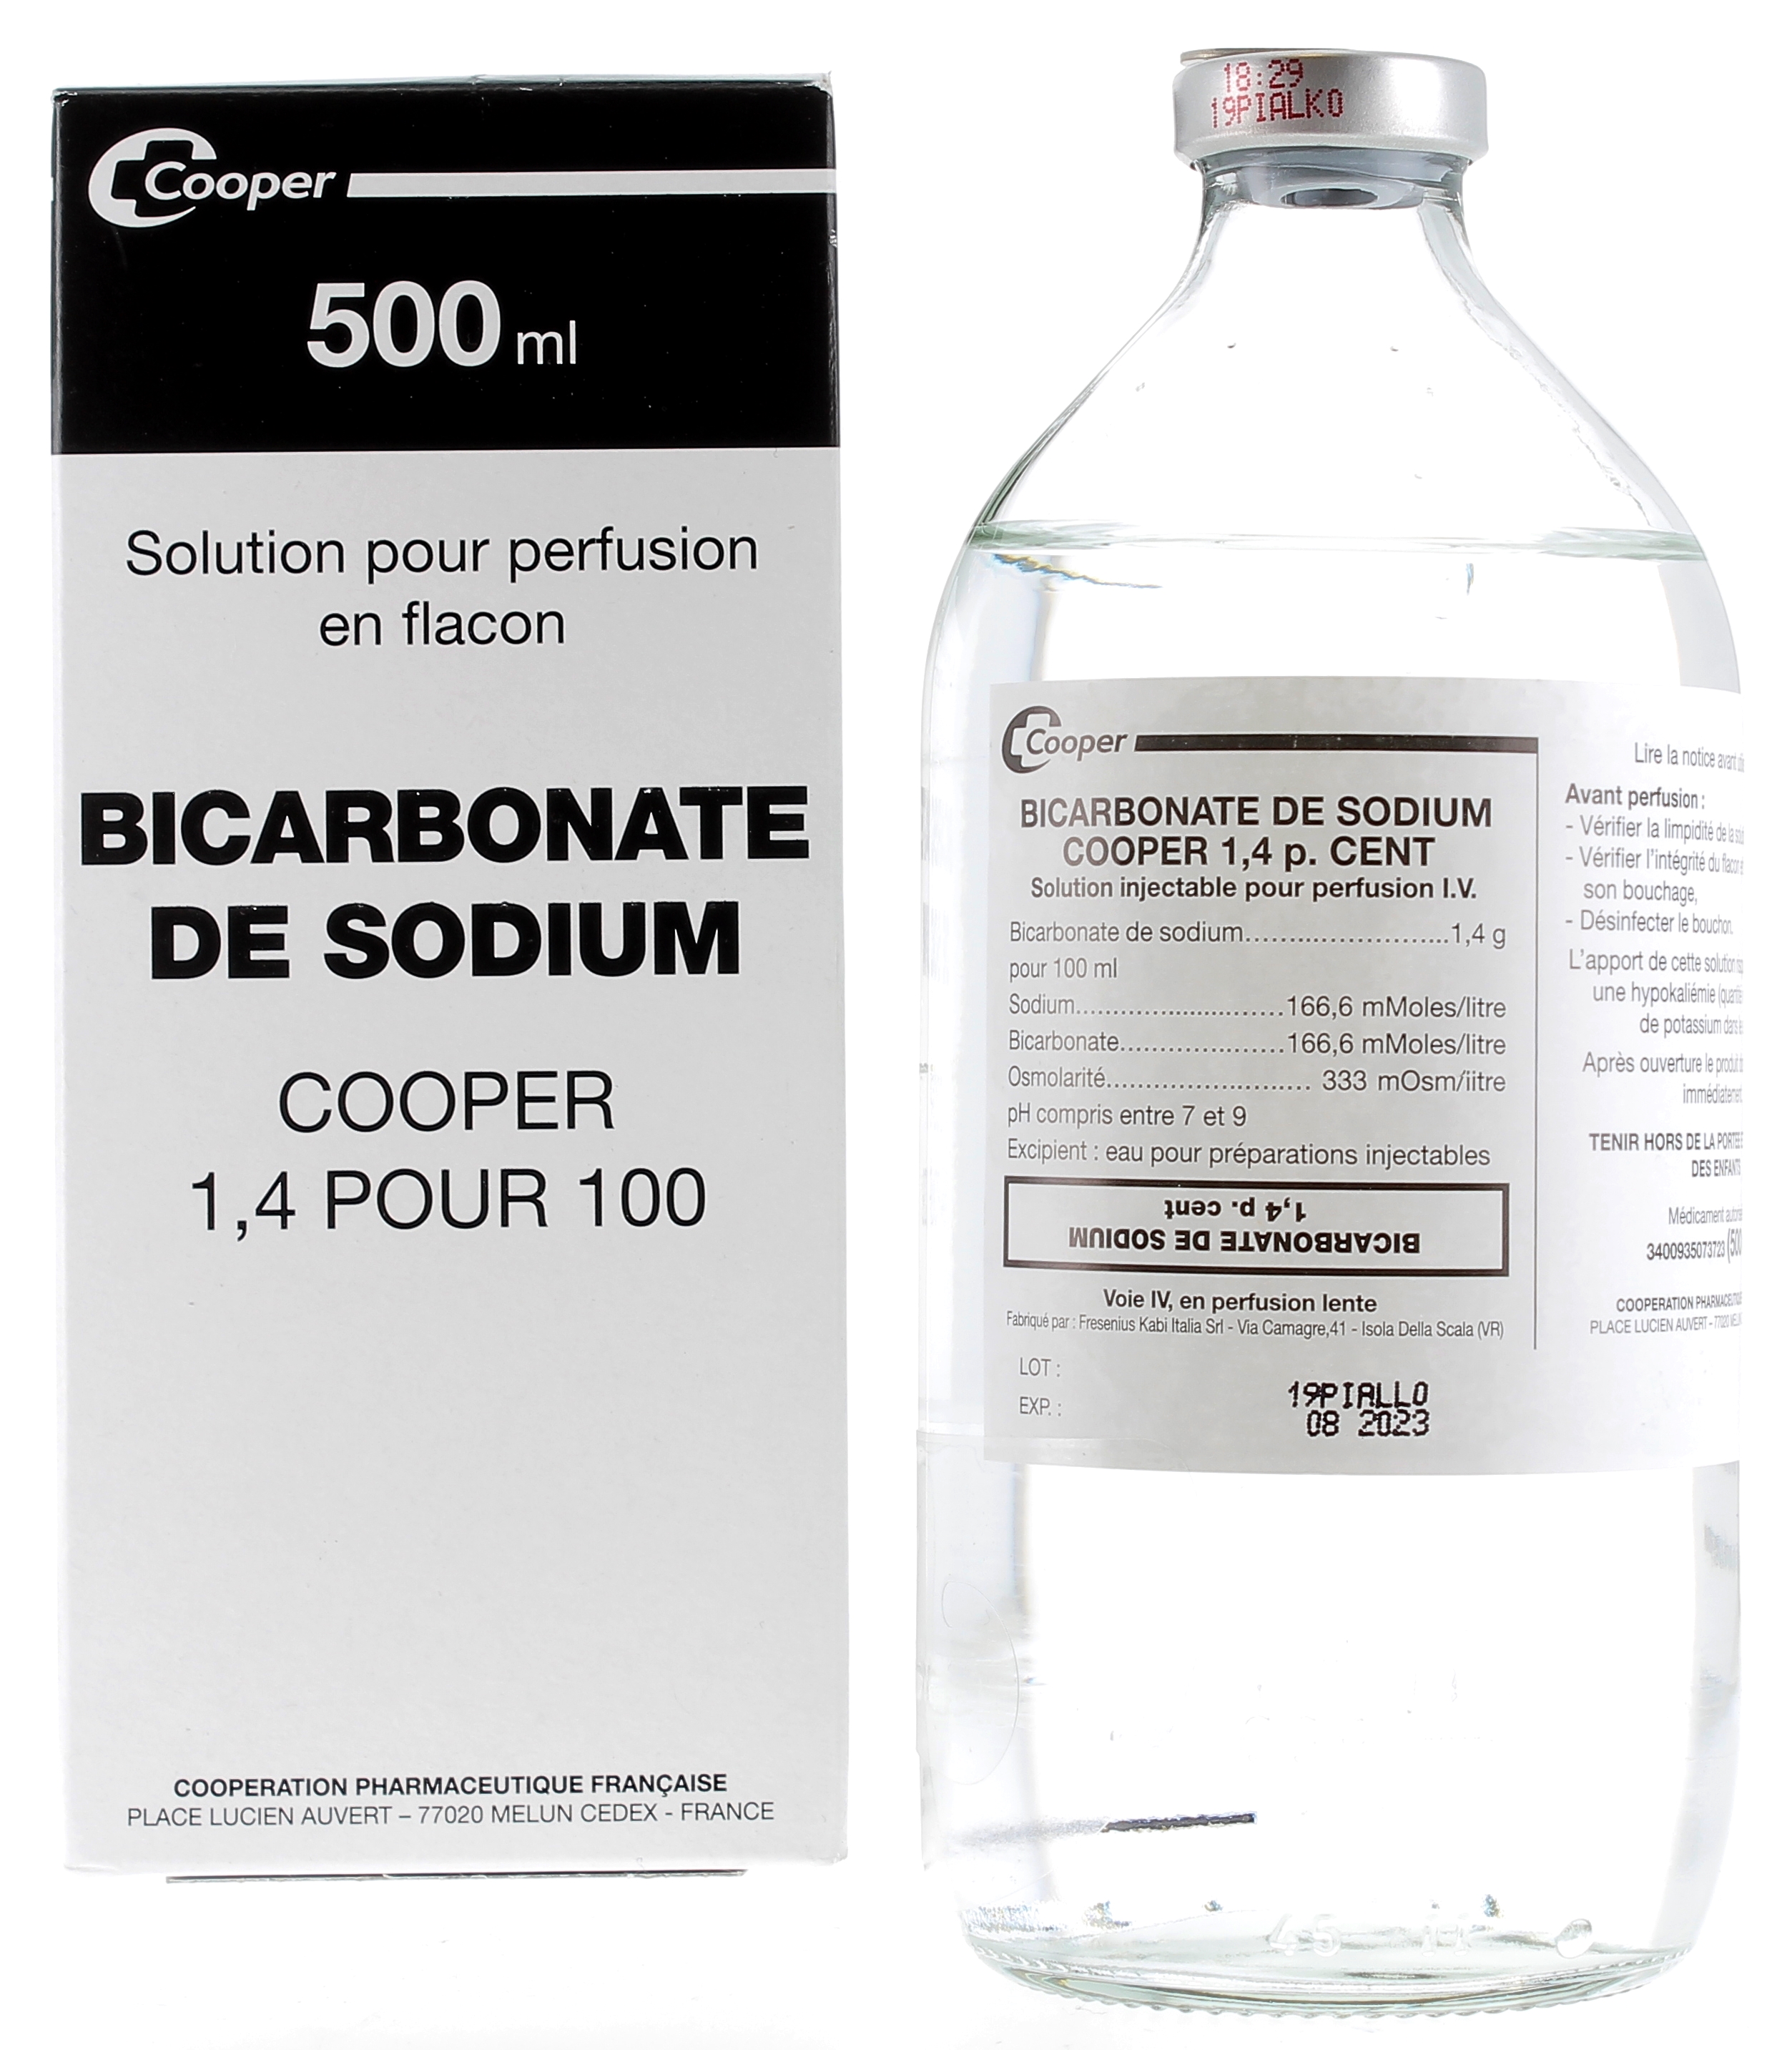 Comment utiliser le bicarbonate pour prendre soin de la bouche ?